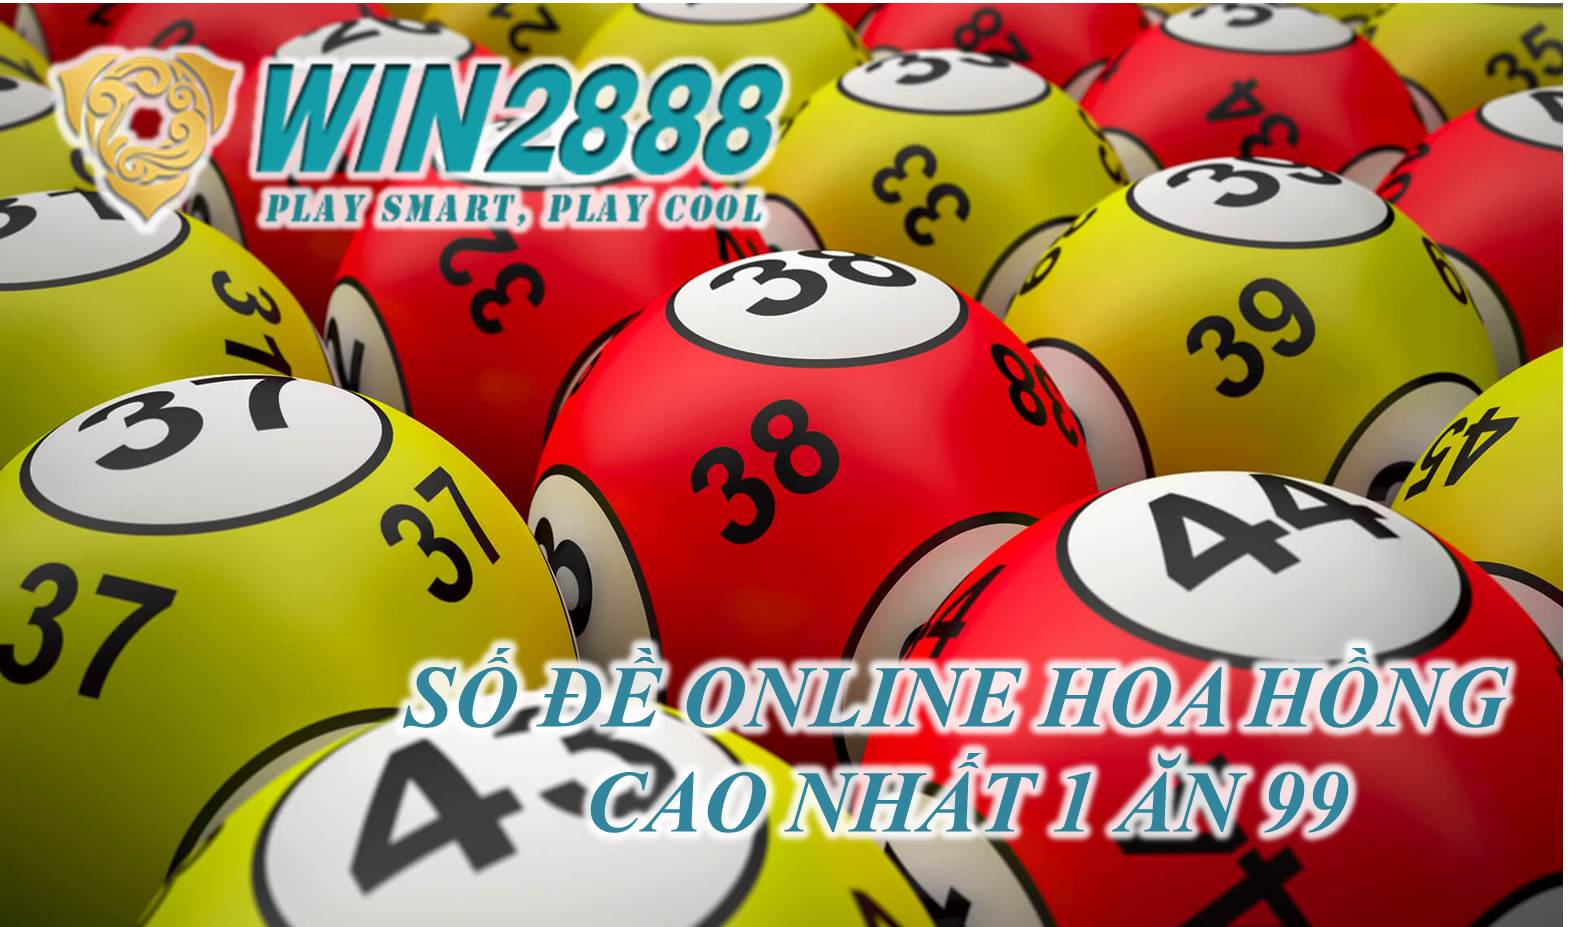 Bí quyết chơi lô đề và tính tiền lô đề miền Nam chính xác nhất cùng Win2888